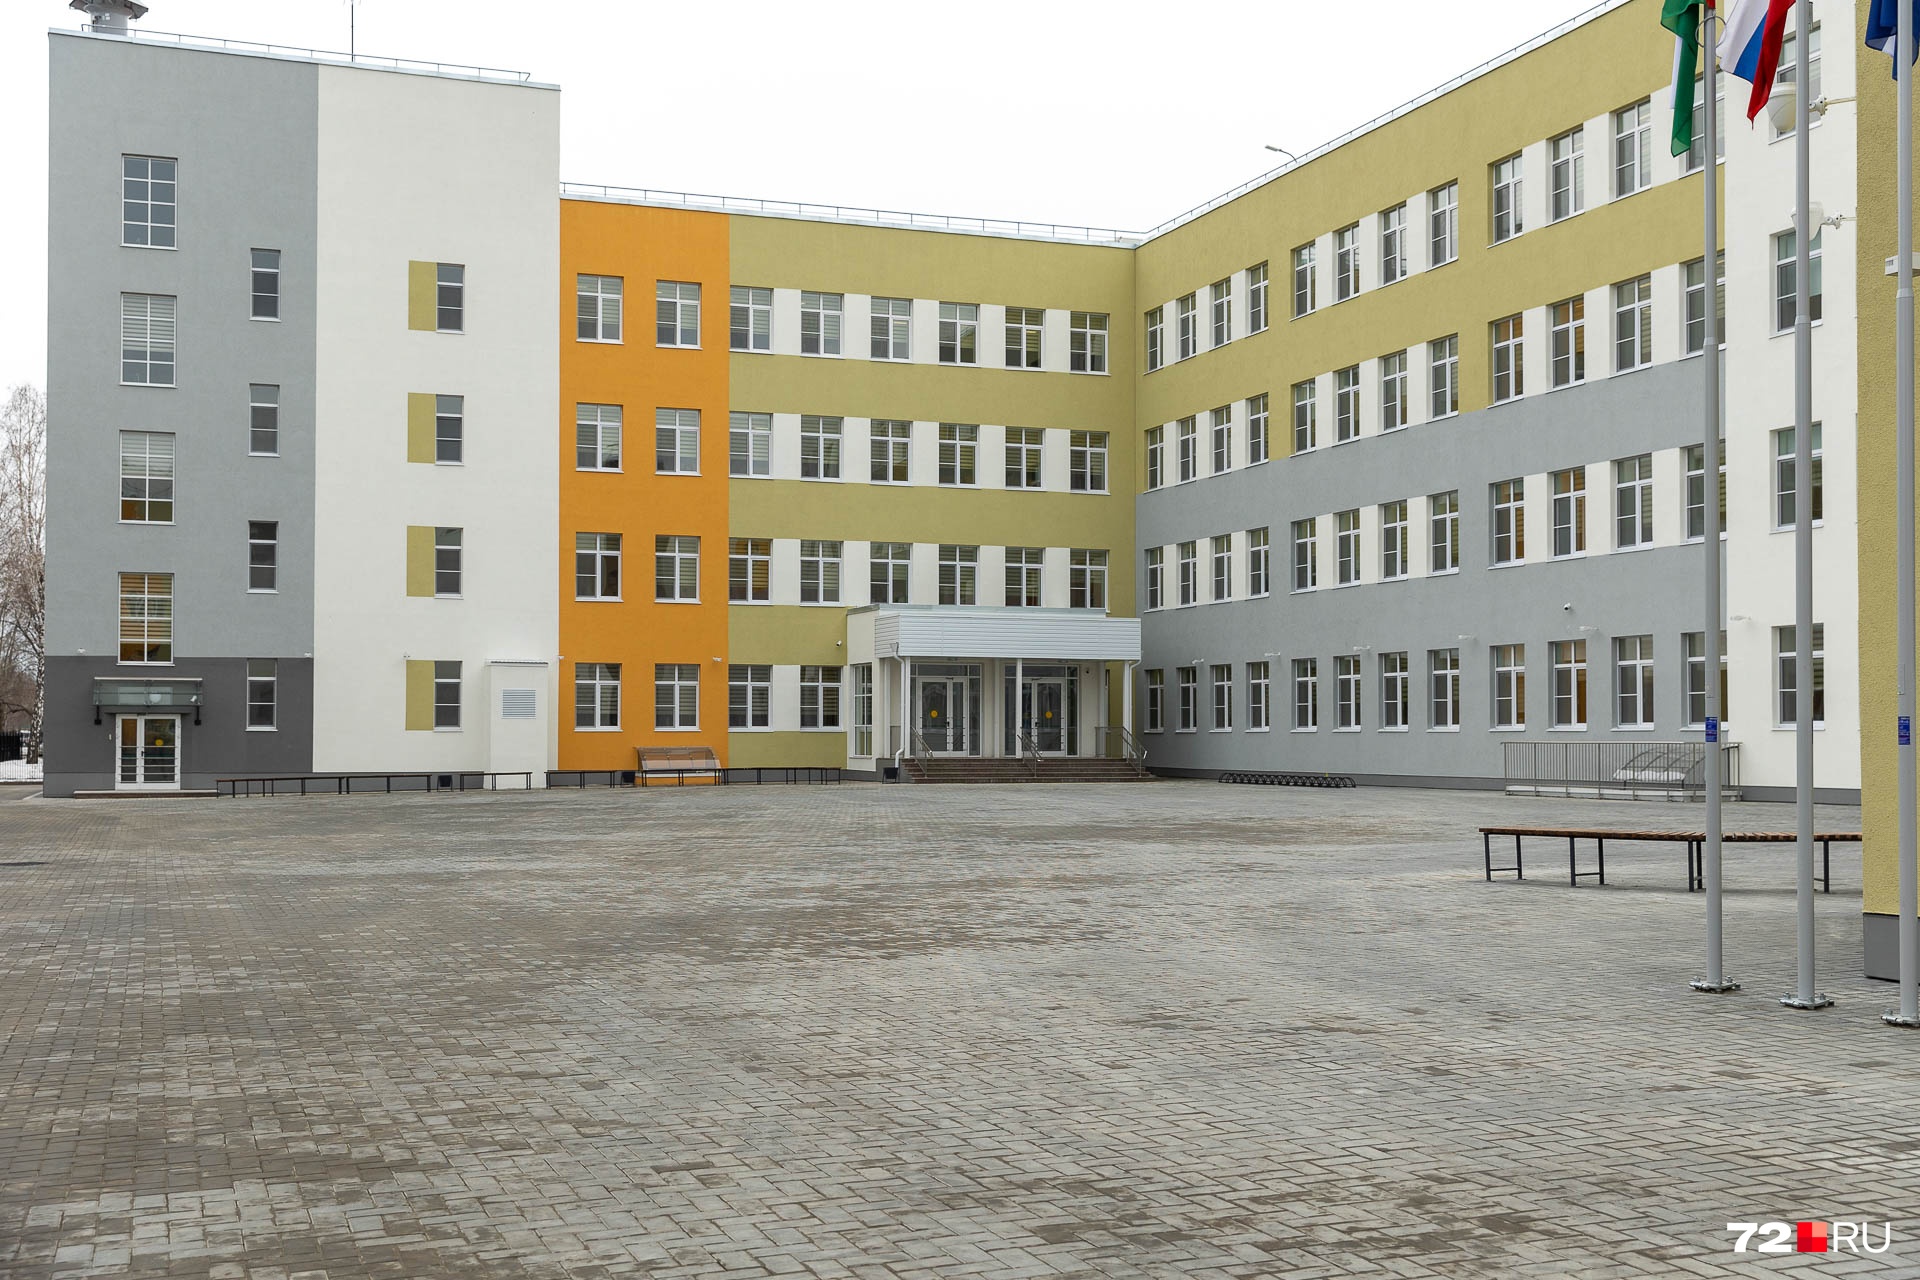 Издалека здание школы кажется очень компактным, но его общая площадь (представьте только!) — <nobr class="_">18,8 тысячи</nobr> квадратных метров